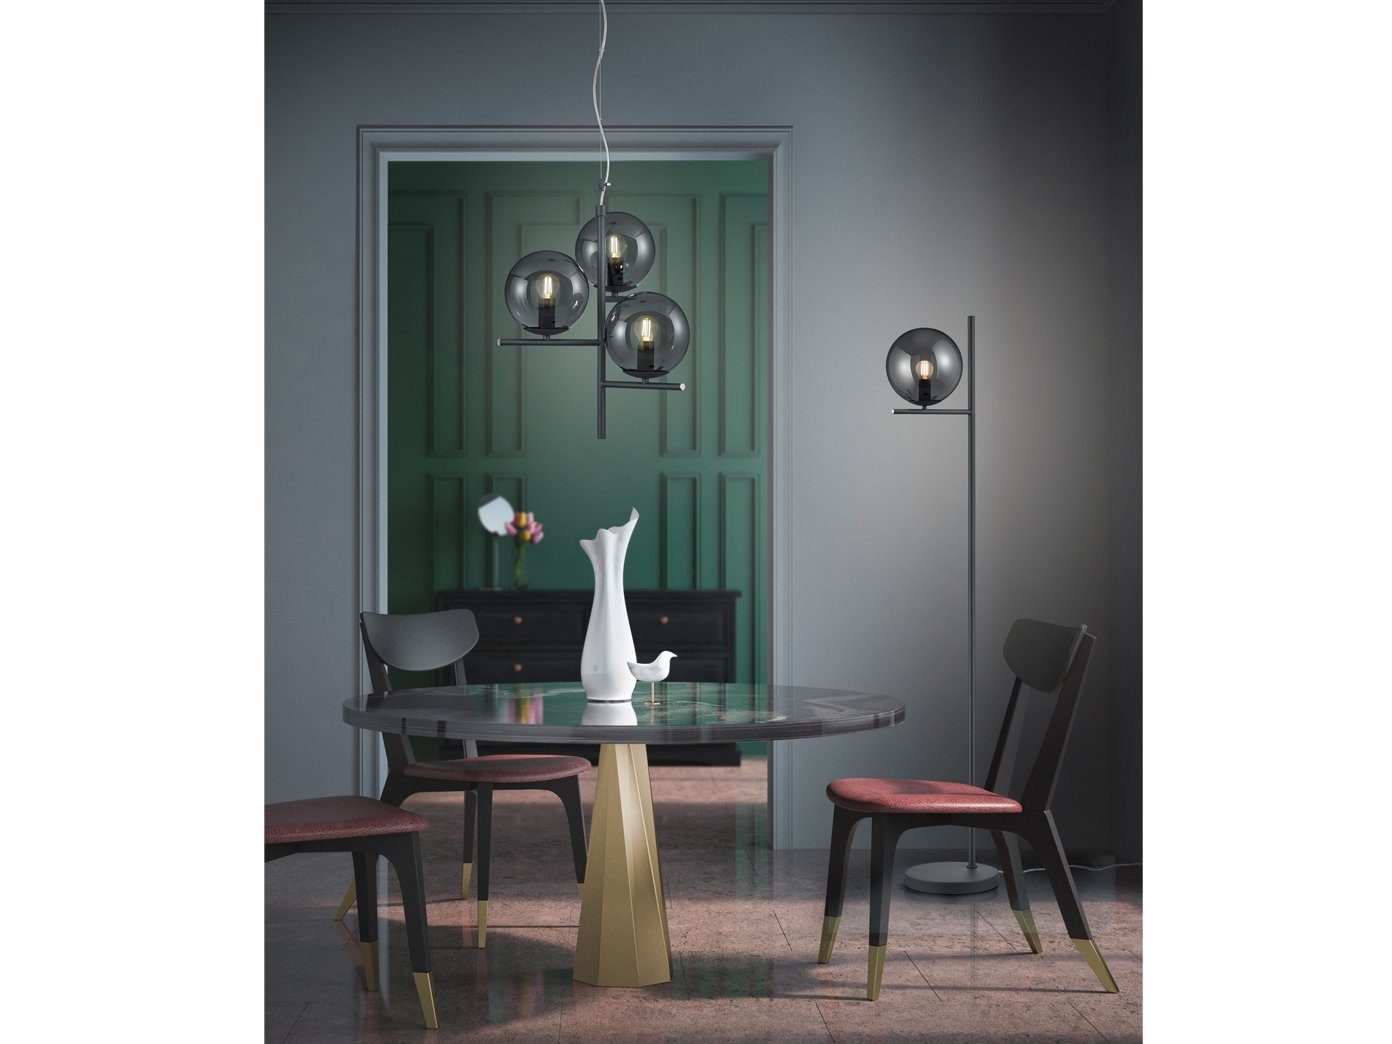 Ø Anthrazit Grau ausgefallene Rauchglas mit Glas-kugel / LED Lampen-schirm wechselbar, LED Pendelleuchte, meineWunschleuchte Warmweiß, hängend Dimmfunktion, 3x 40cm